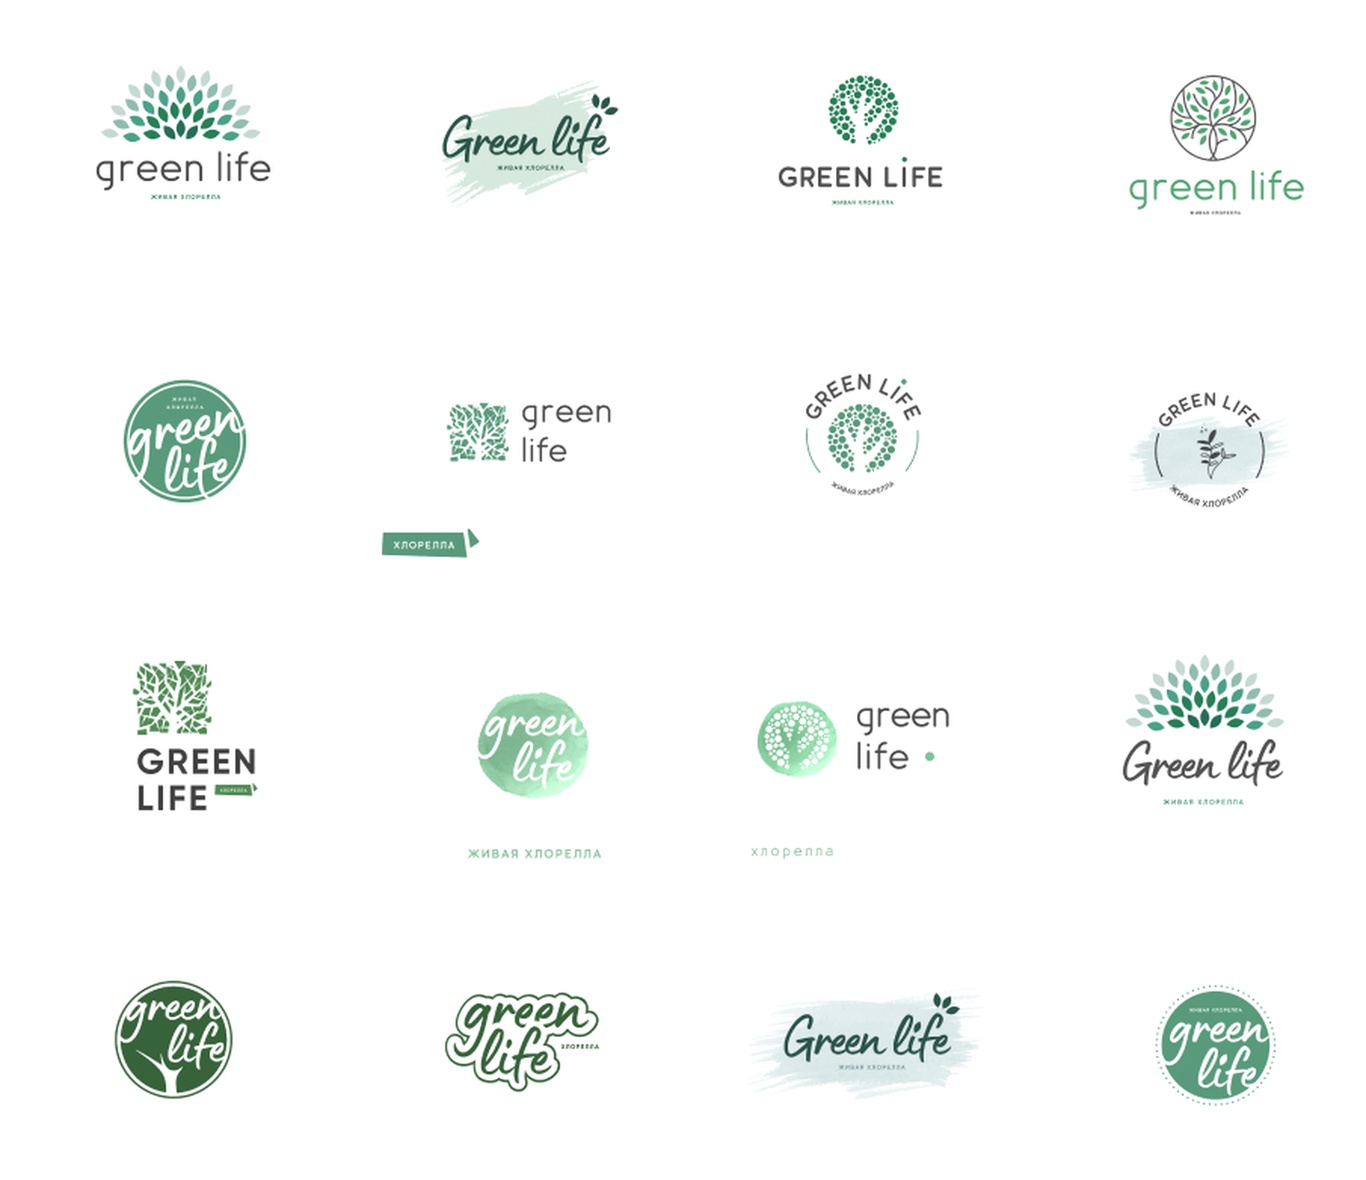 Мы начали с разработки логотипа. Цветовая гамма передает натуральность, развитие, здоровую жизнь и энергию.